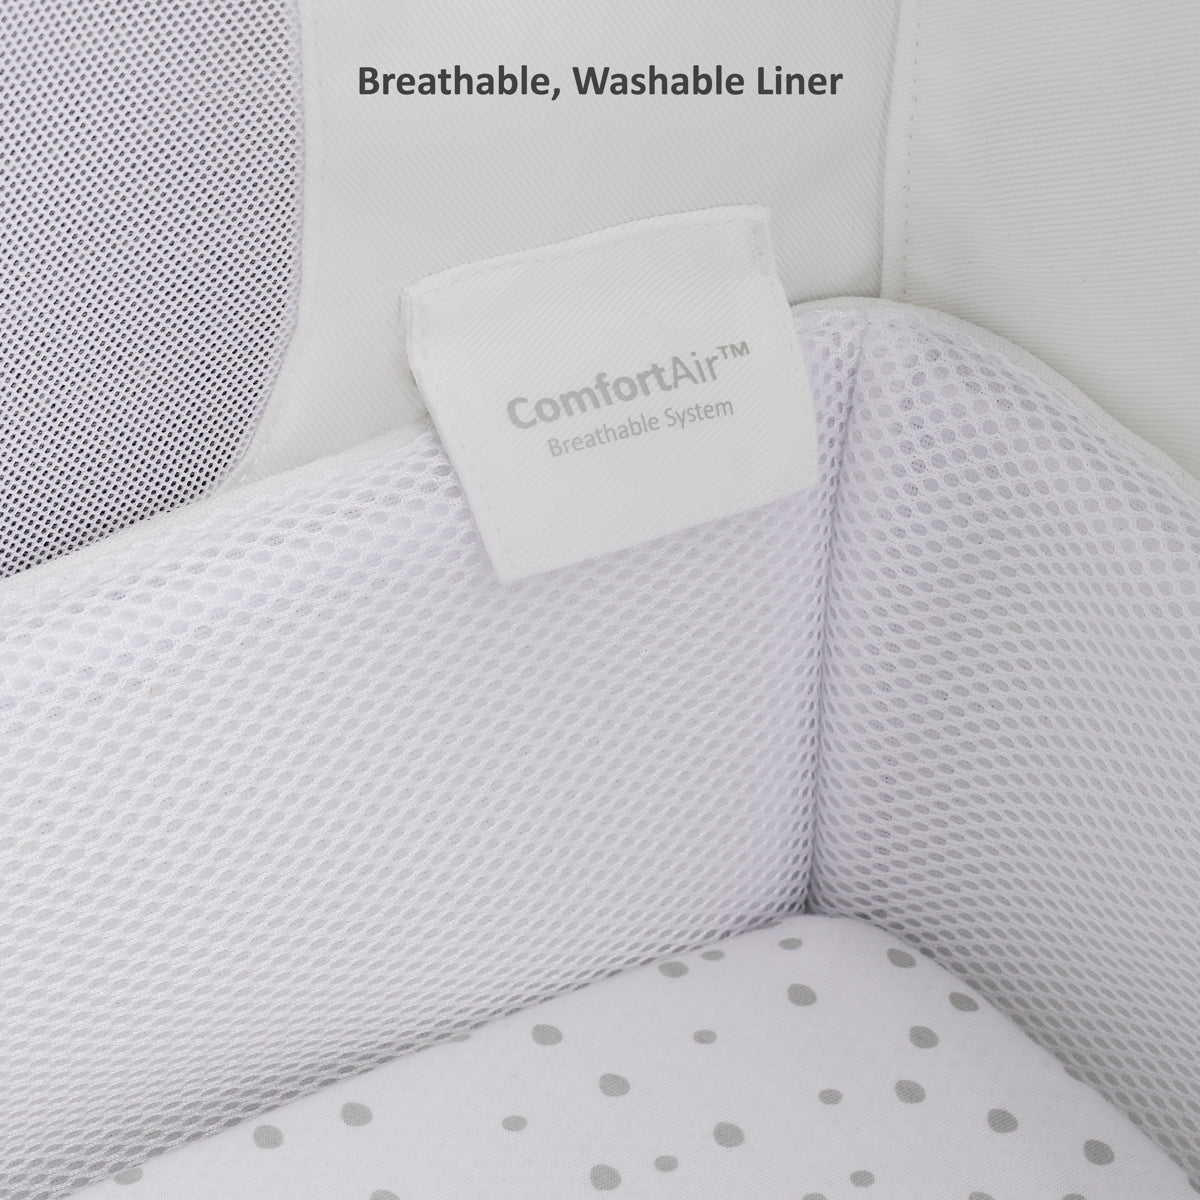 SnuzPod4 Bedside Crib Starter Bundle- Dove